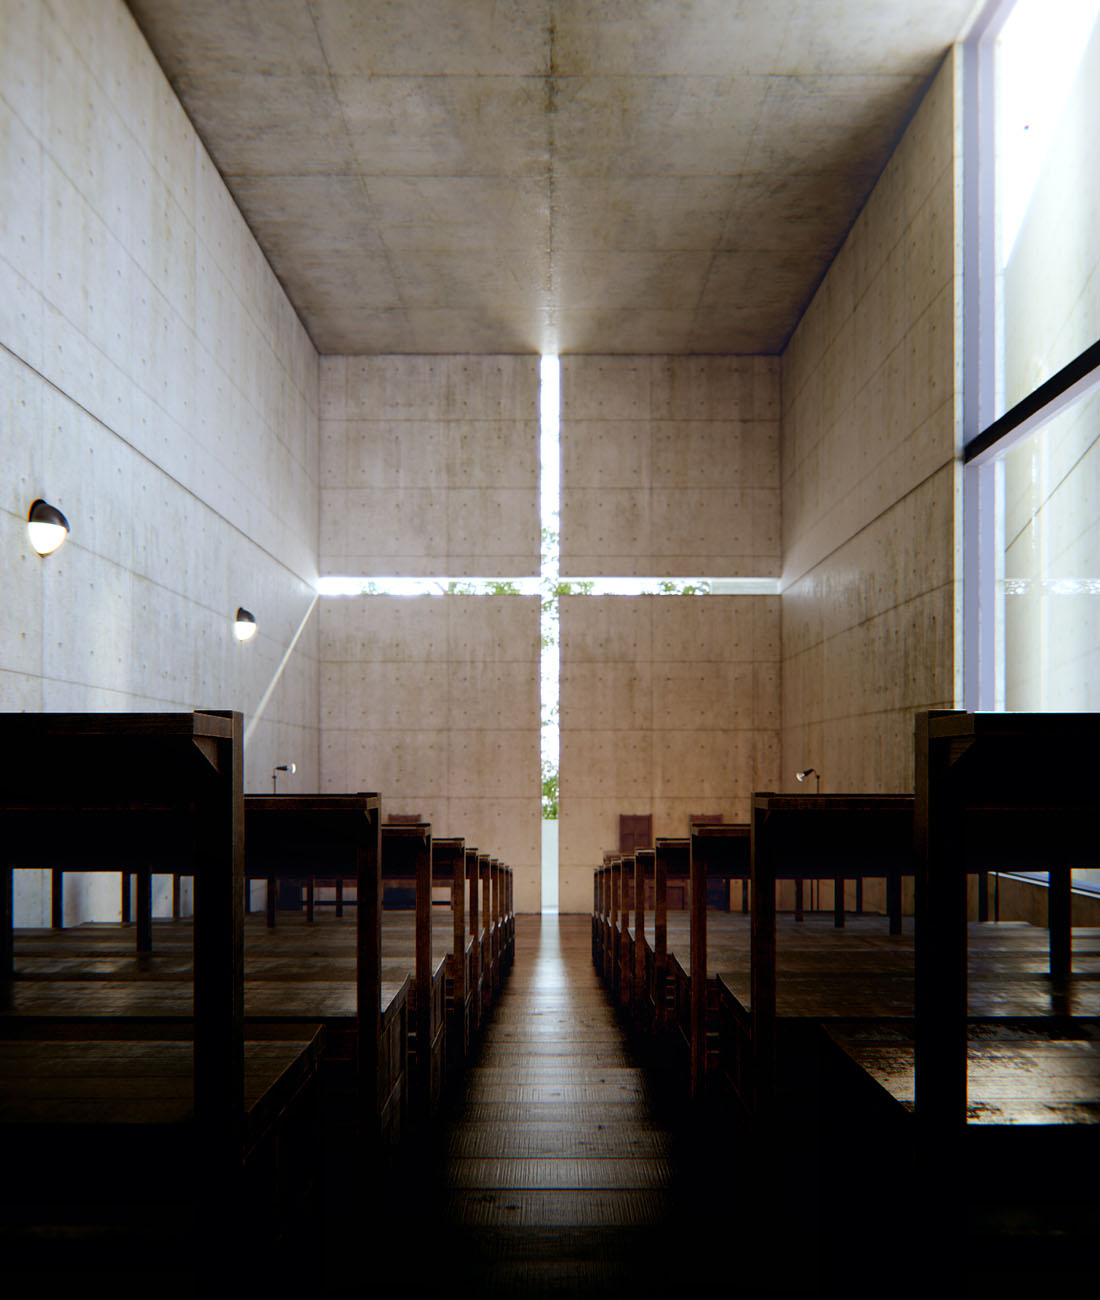 The church of light, by Tadao Ando, Osaka